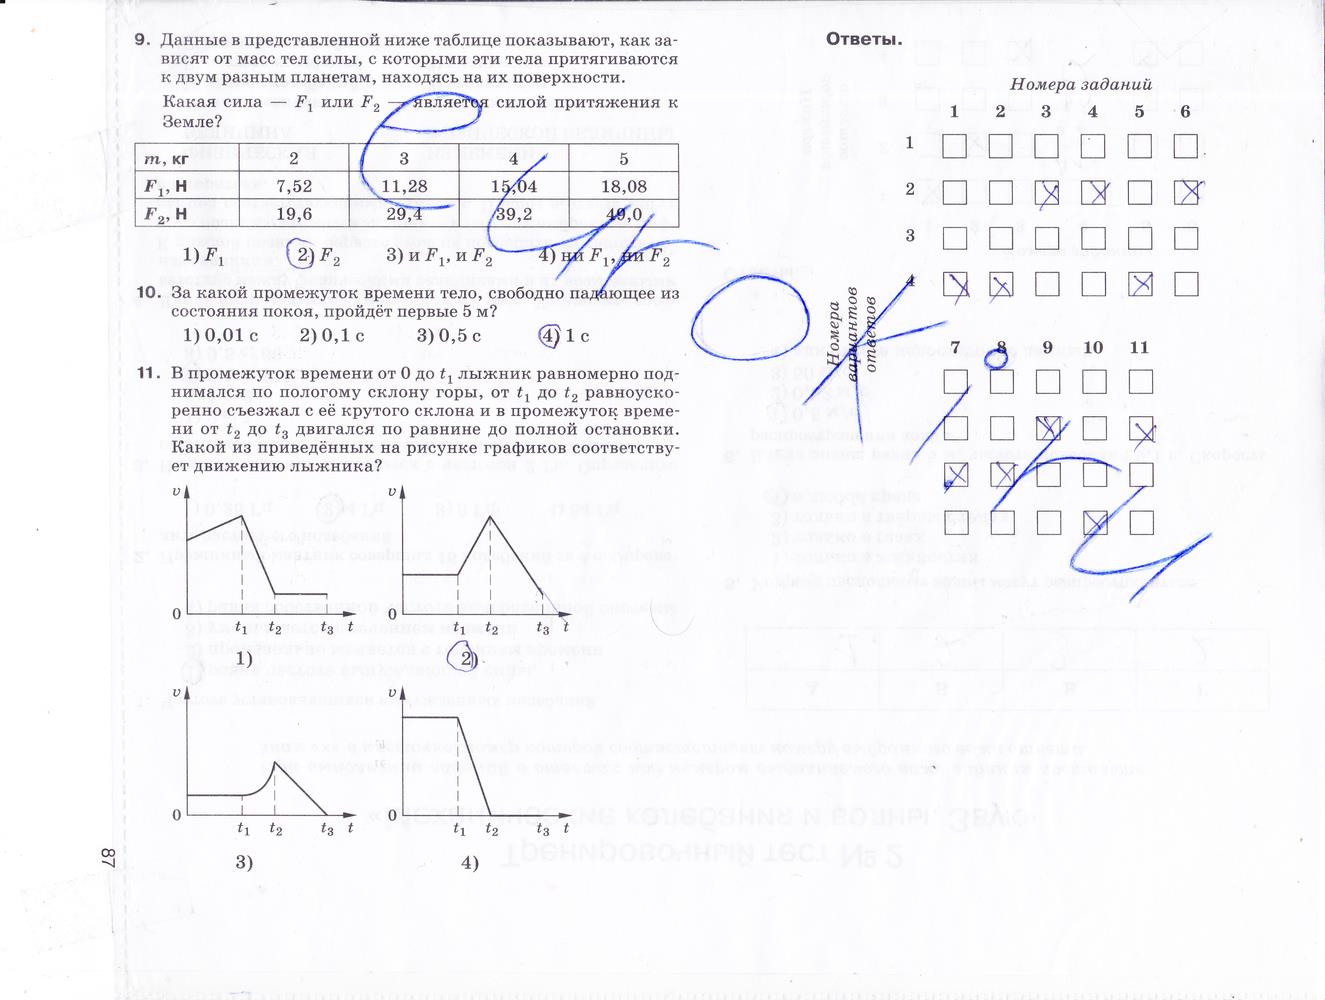 гдз 9 класс рабочая тетрадь страница 87 физика Гутник, Власова